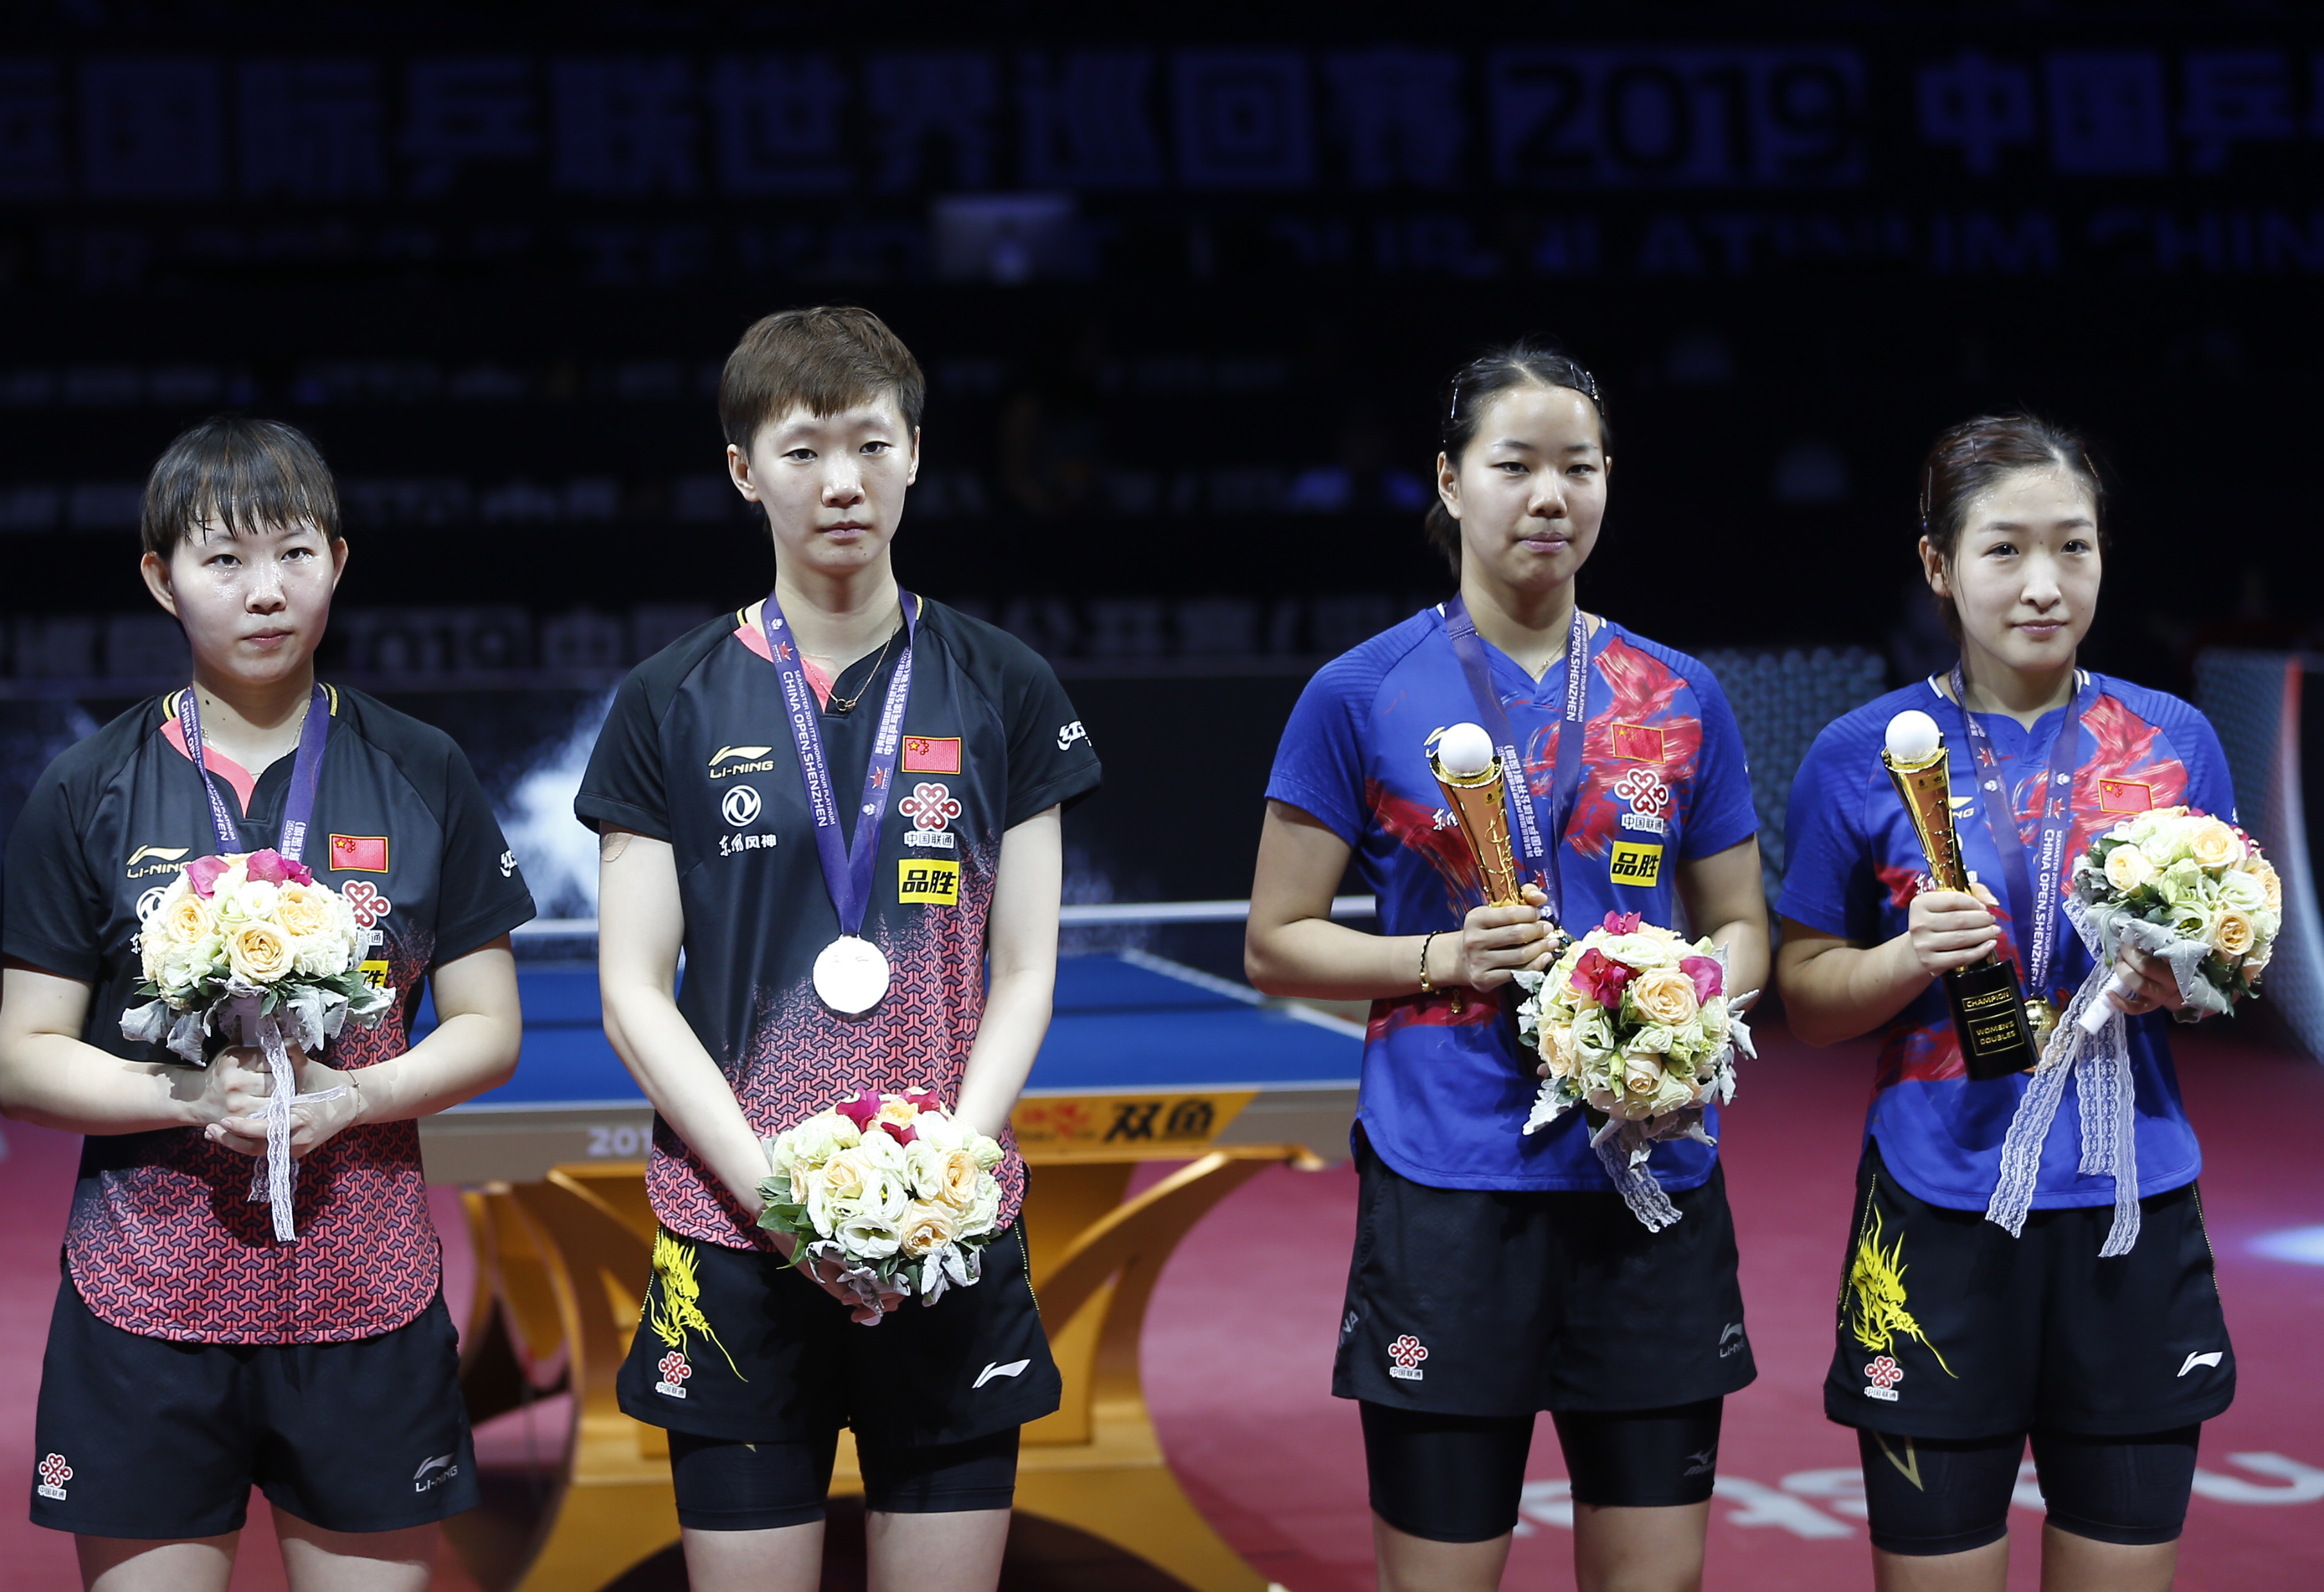 当日,在深圳进行的国际乒联世界巡回赛2019中国乒乓球公开赛女双救